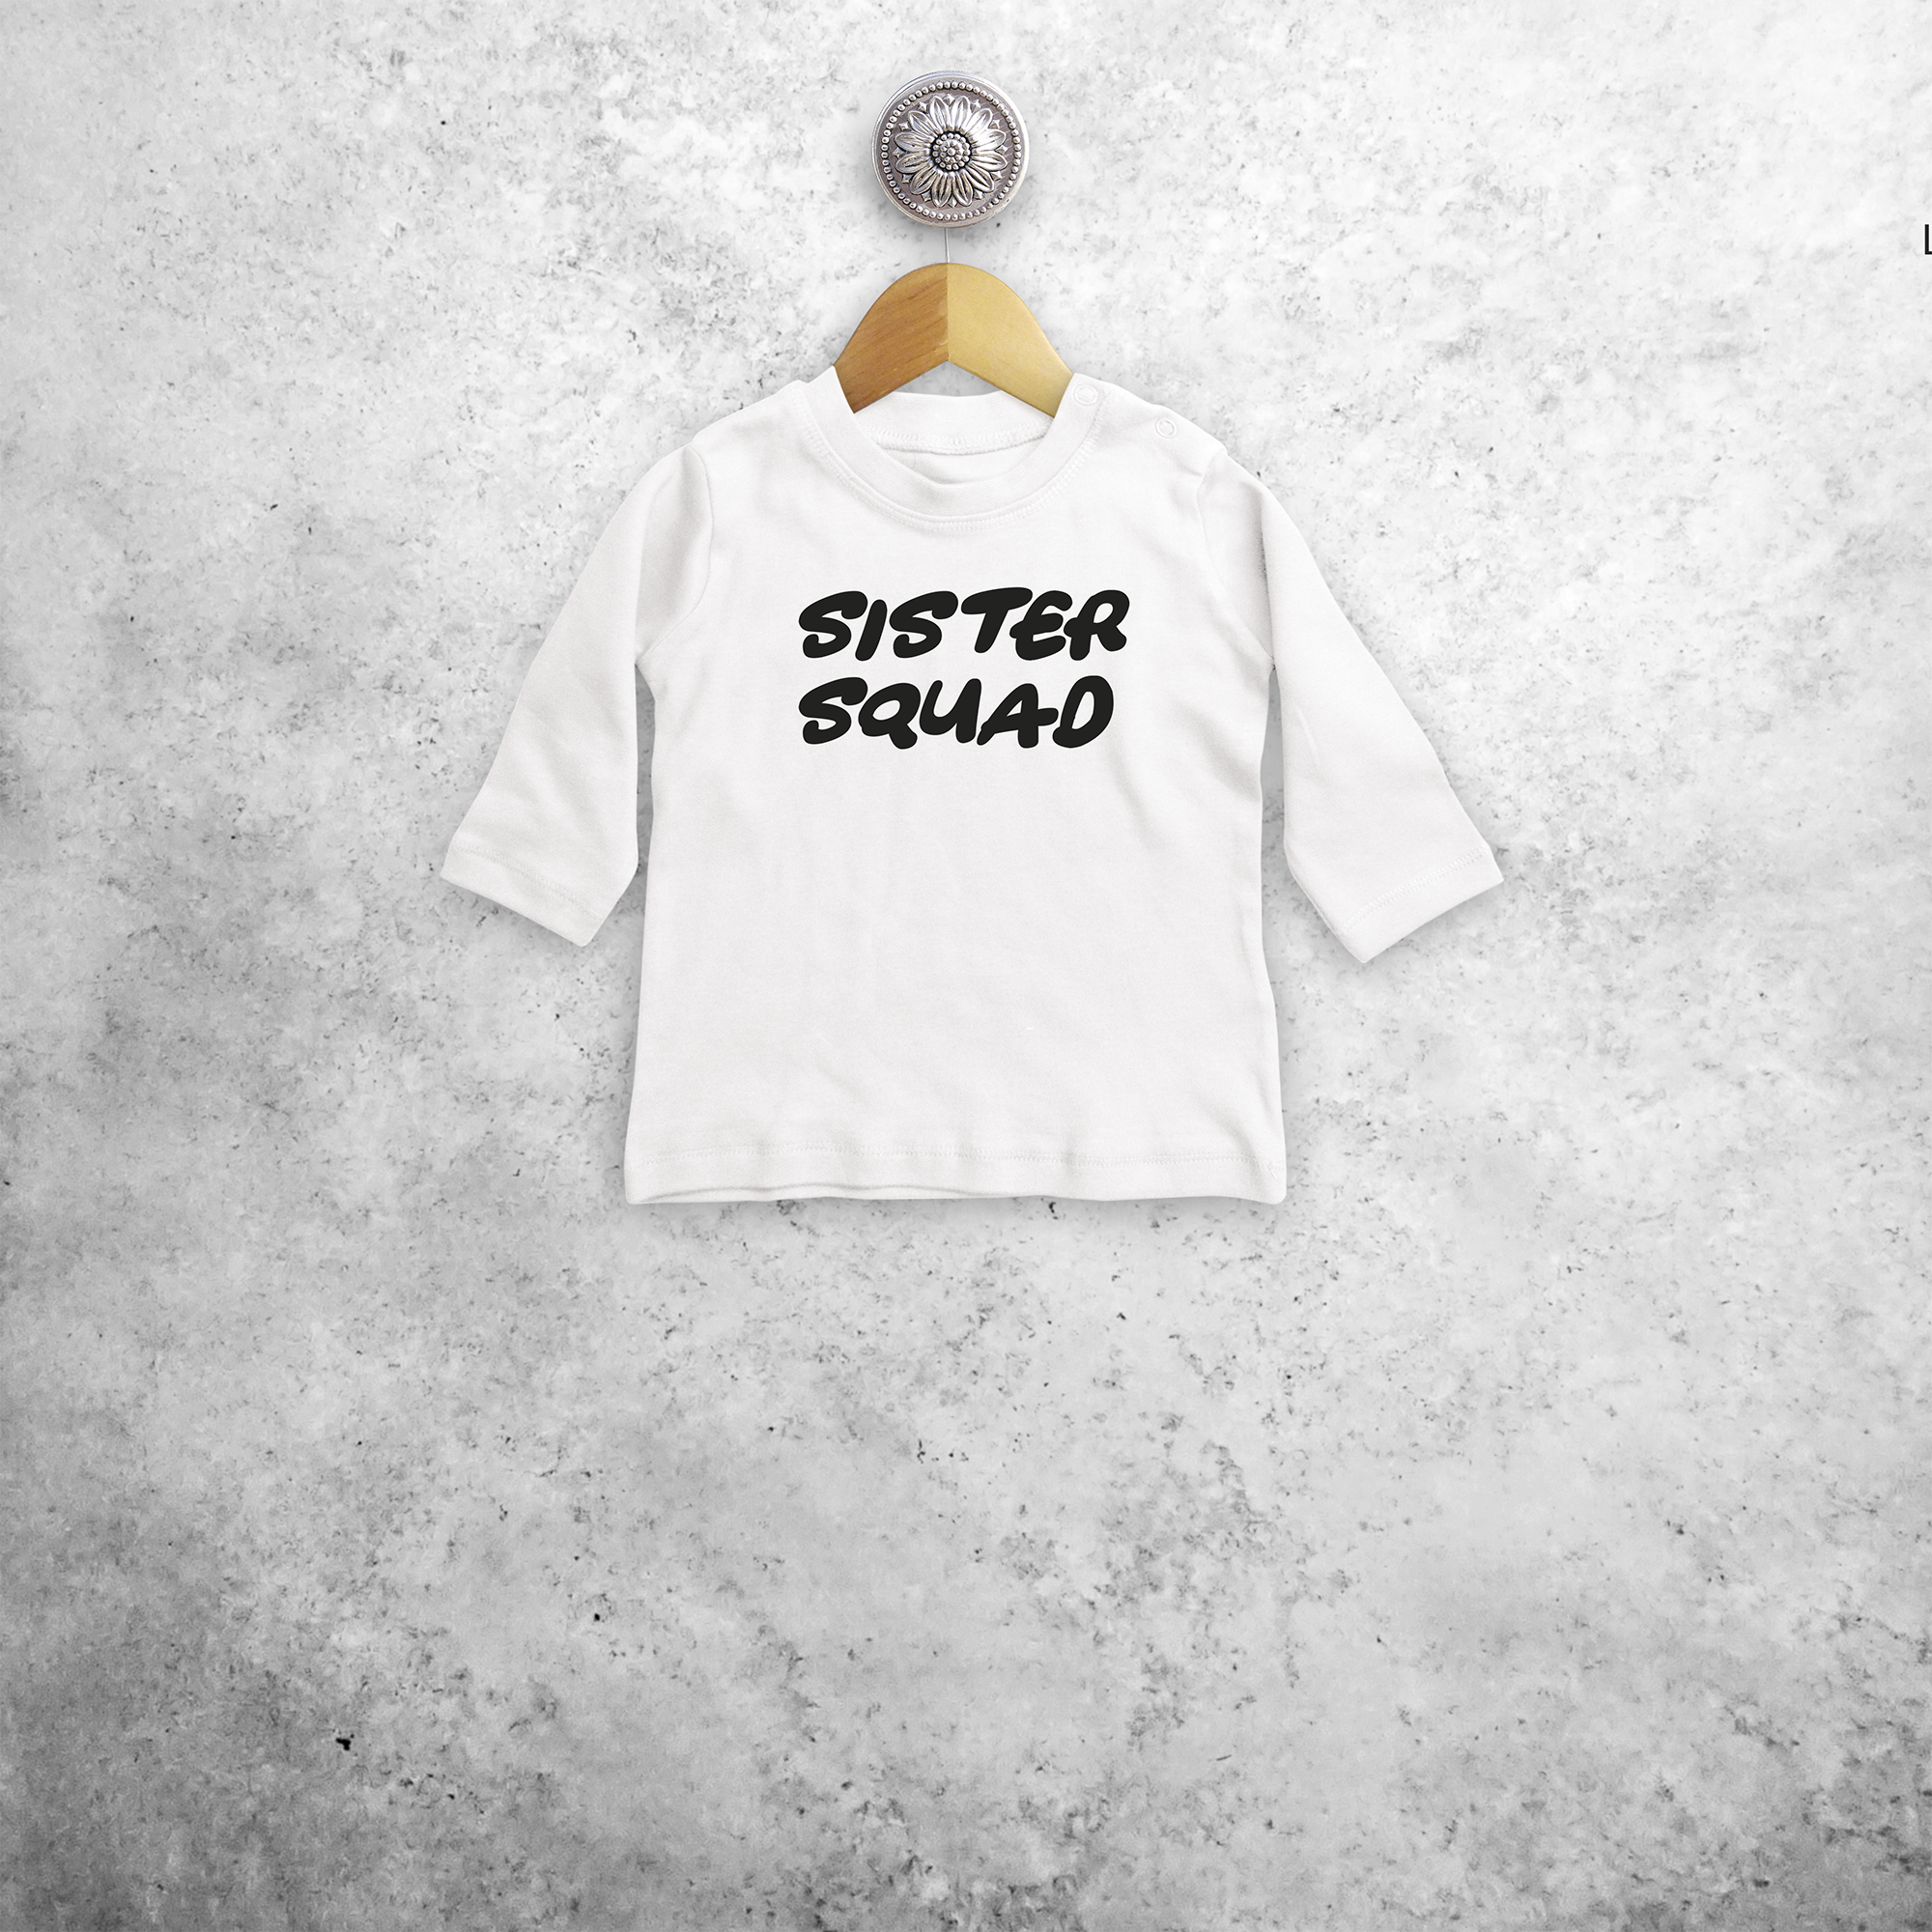 'Sister squad' baby shirt met lange mouwen